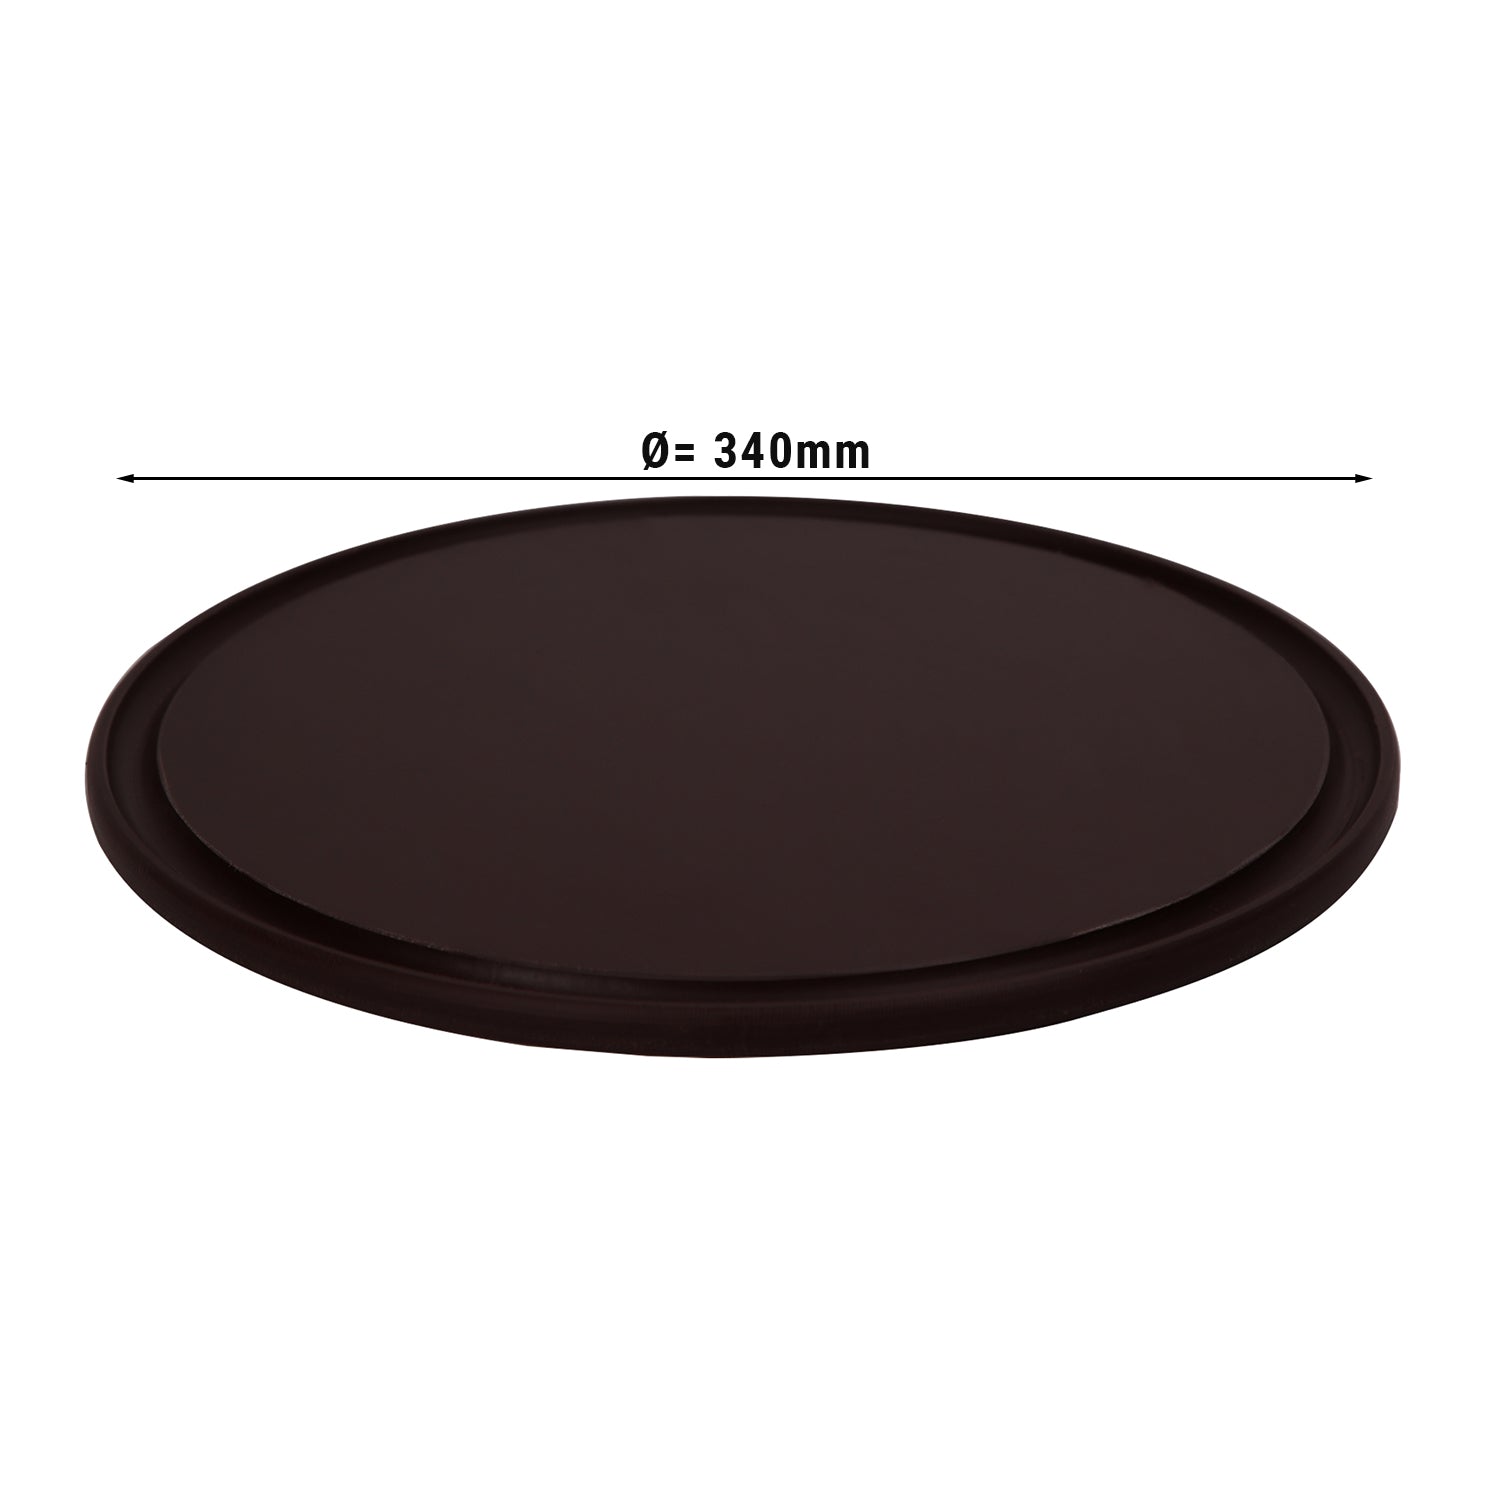 Pizzabakke - 34 cm i diameter